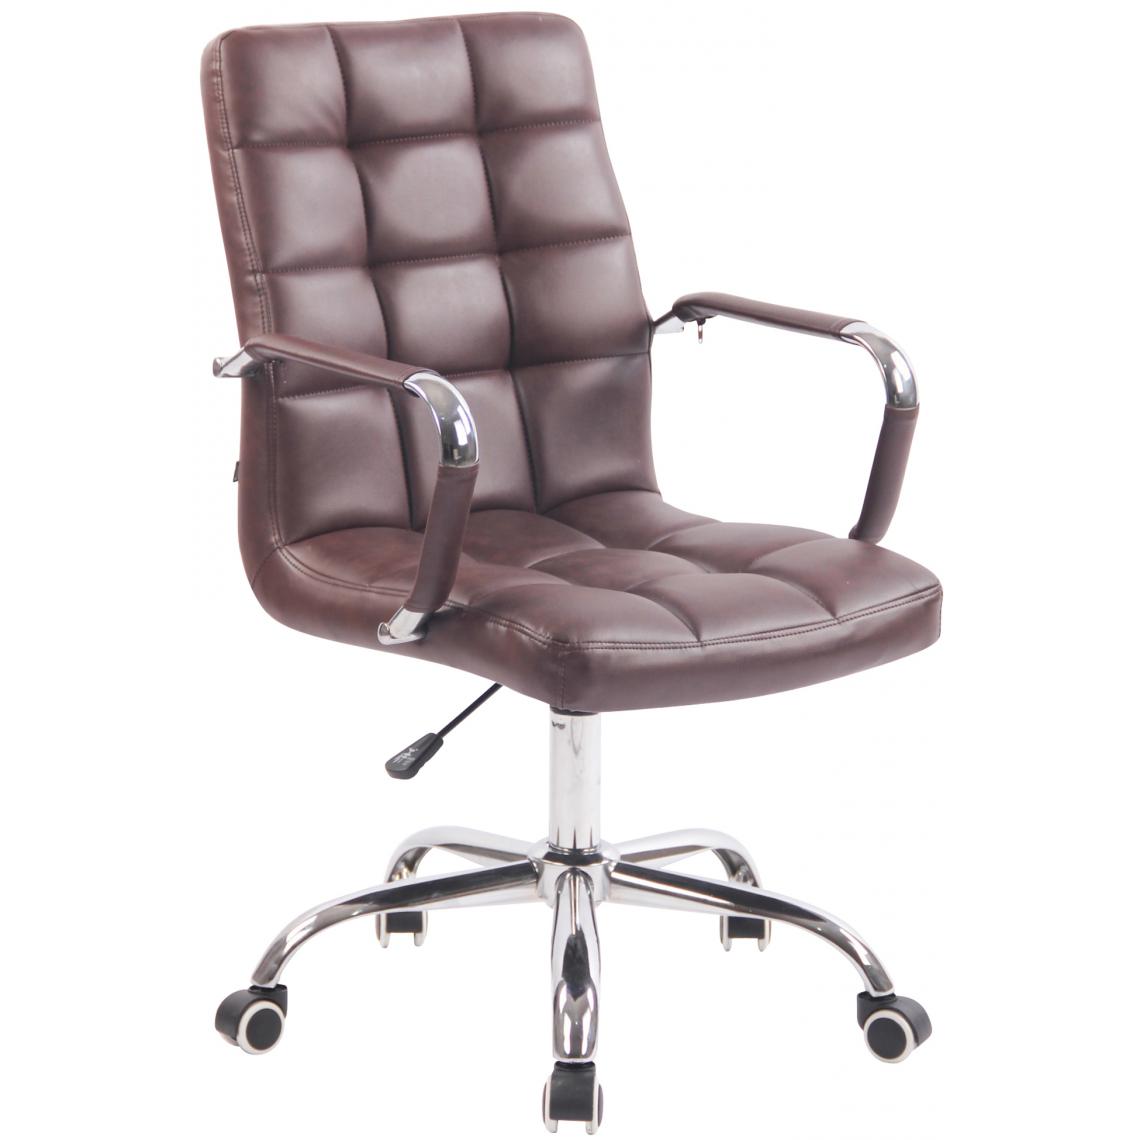 Icaverne - Superbe Chaise de bureau serie Helsinki couleur Bourgogne - Chaises